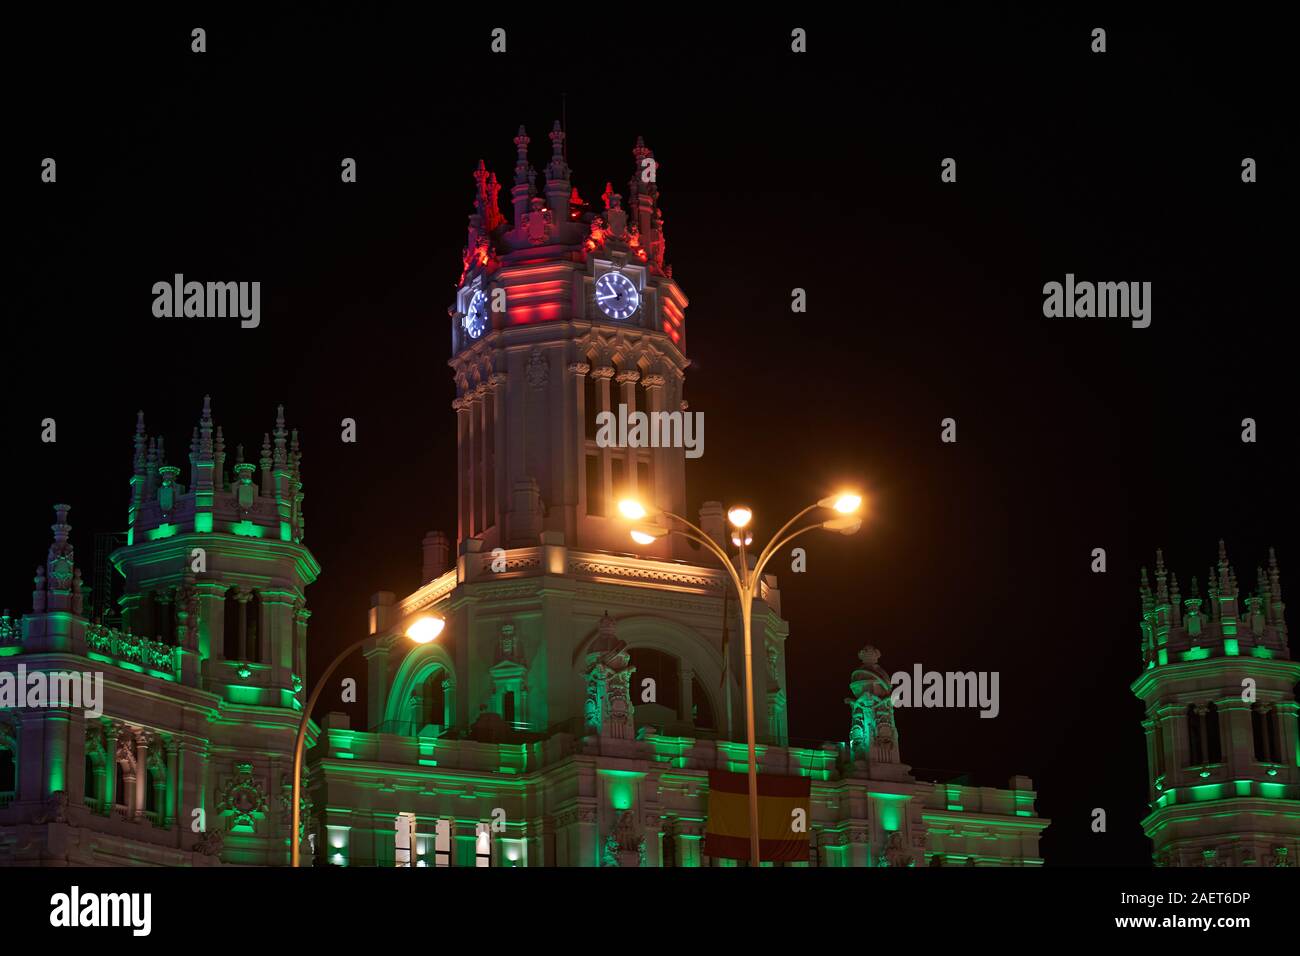 La torre dell'orologio del Palazzo delle comunicazioni a Cibeles a Madrid, illuminato in diversi colori per il Natale 2019 Foto Stock